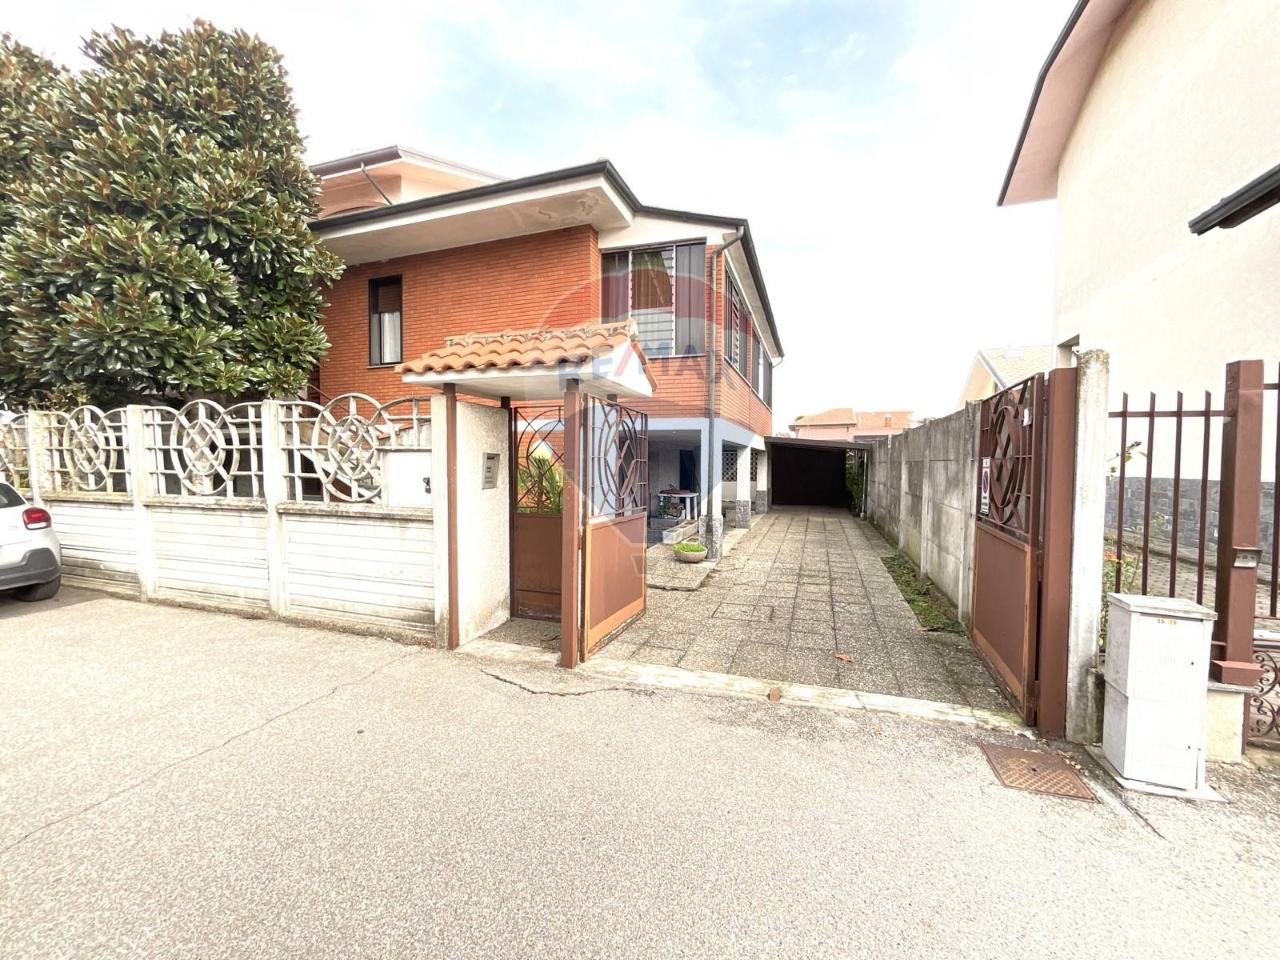 Villa in vendita a Casorezzo